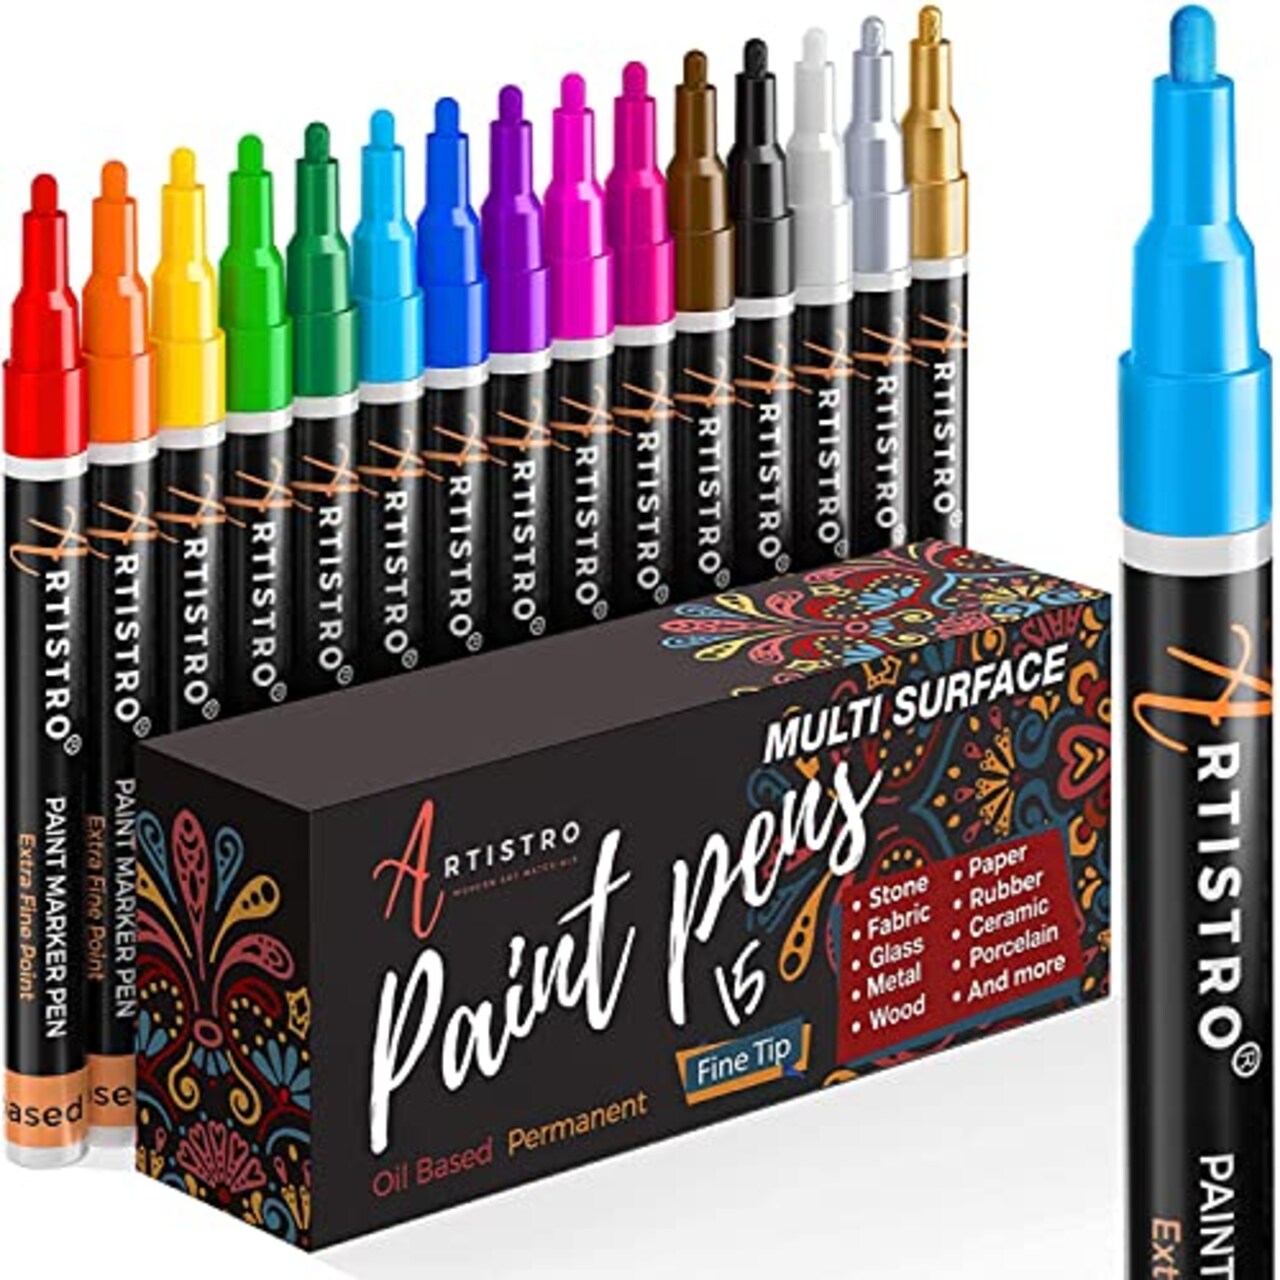 Permanent Paint Markers Paint Pens for Plastic Metal,Oil Based Paint Marker  Pens Set, Quick Dry & Waterproof, Oil Paint Pen Paint Markers for Glass